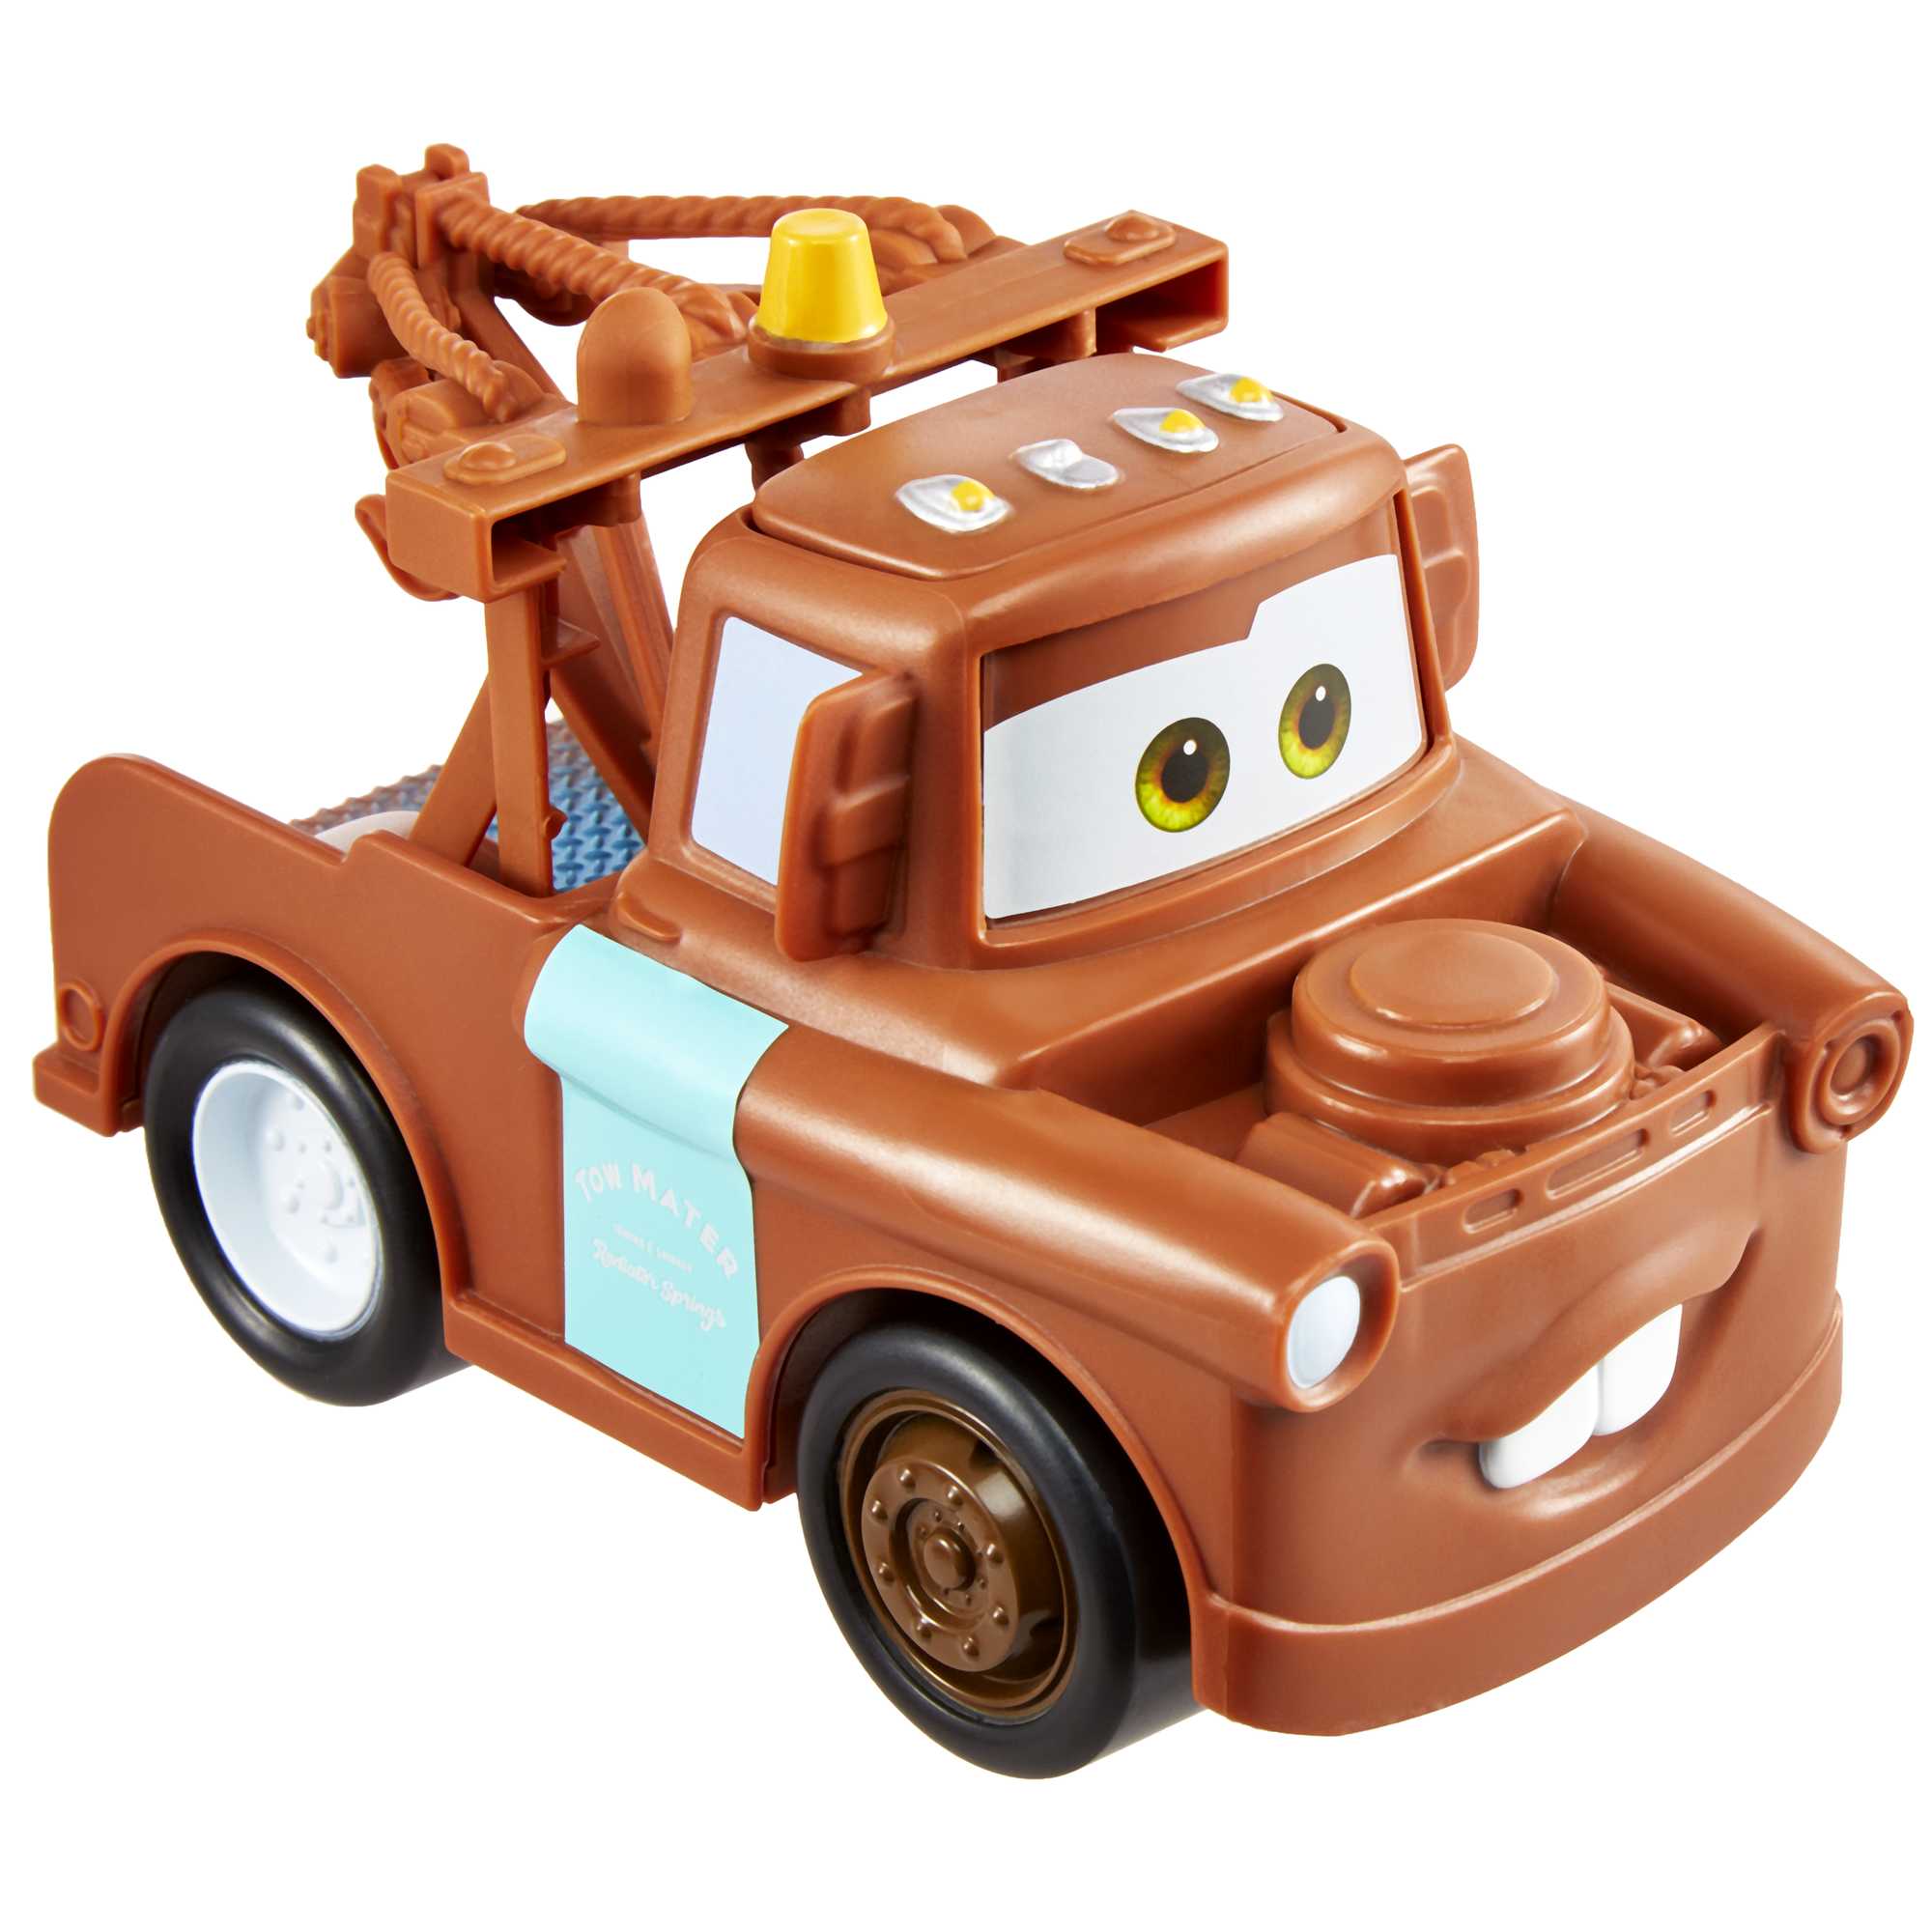 Véhicule Sonore Cars Mattel : King Jouet, Les autres véhicules Mattel -  Véhicules, circuits et jouets radiocommandés